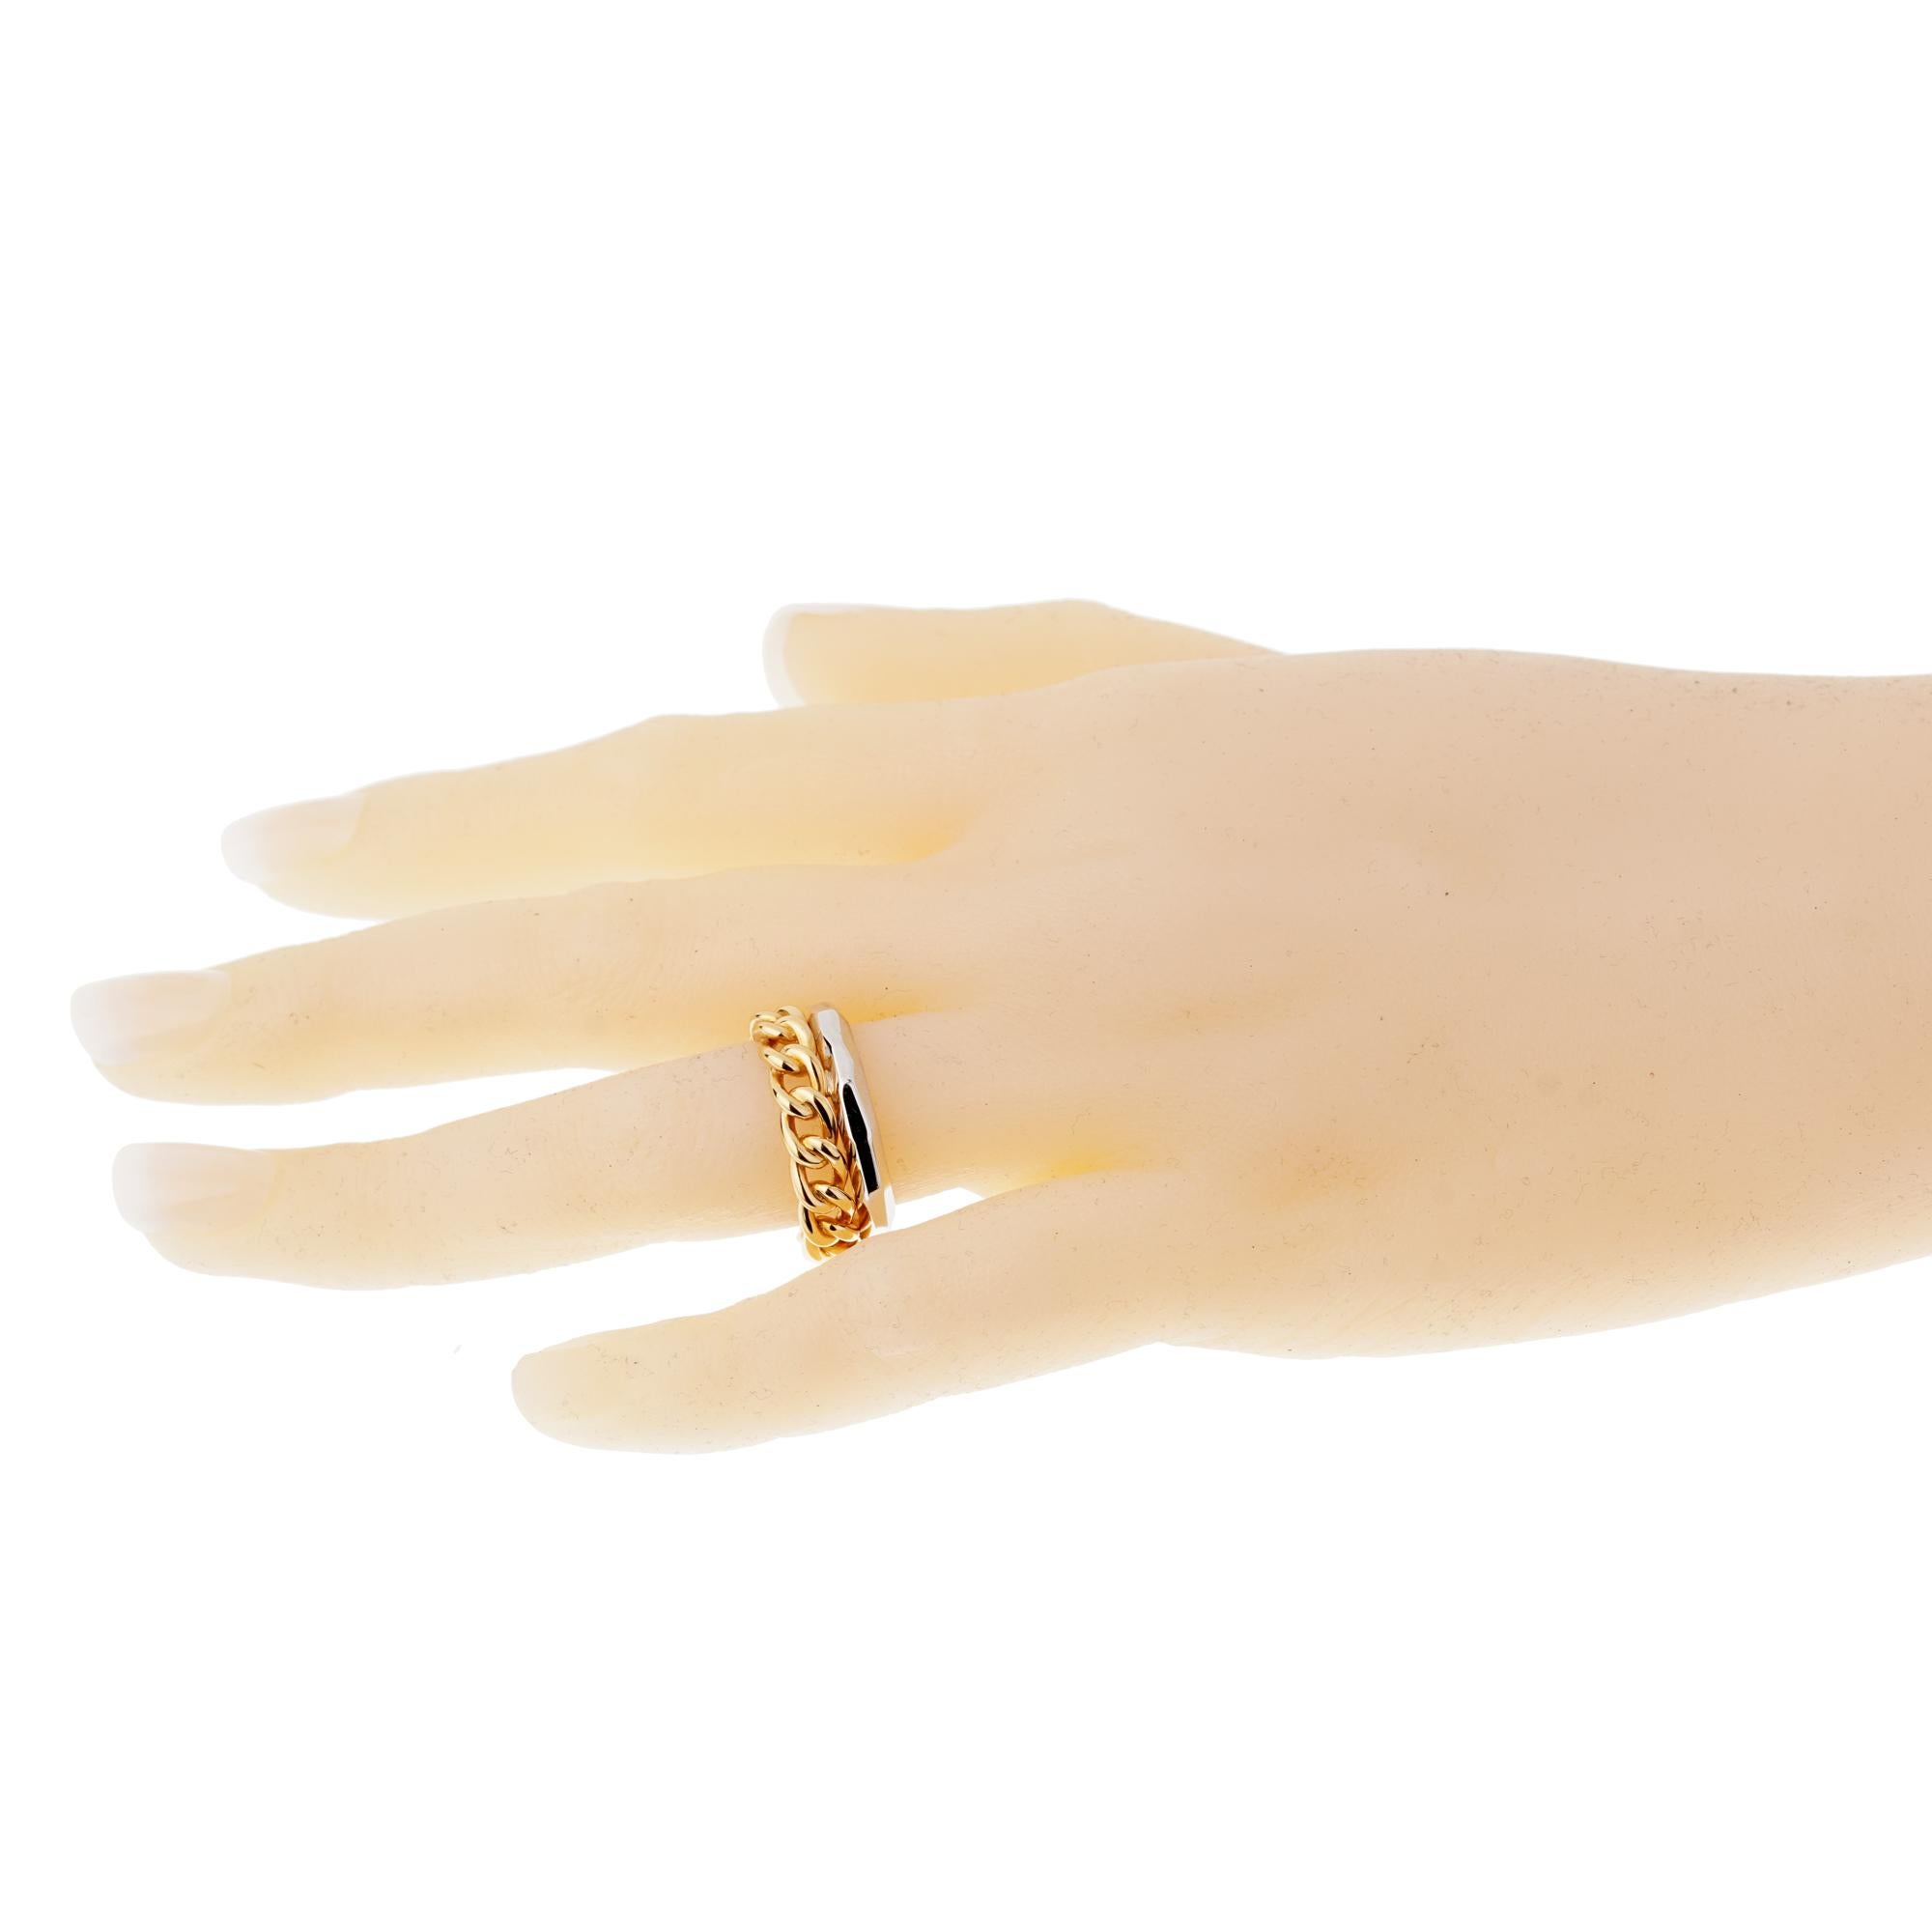 Ein schicker Stapelring von Pomellato mit einem kubanischen Gliederring aus Roségold, der mit einem facettierten Ring aus 18 Karat Weißgold verbunden ist. Dieser fabelhafte Ring ist perfekt für jede Gelegenheit und misst 0,28